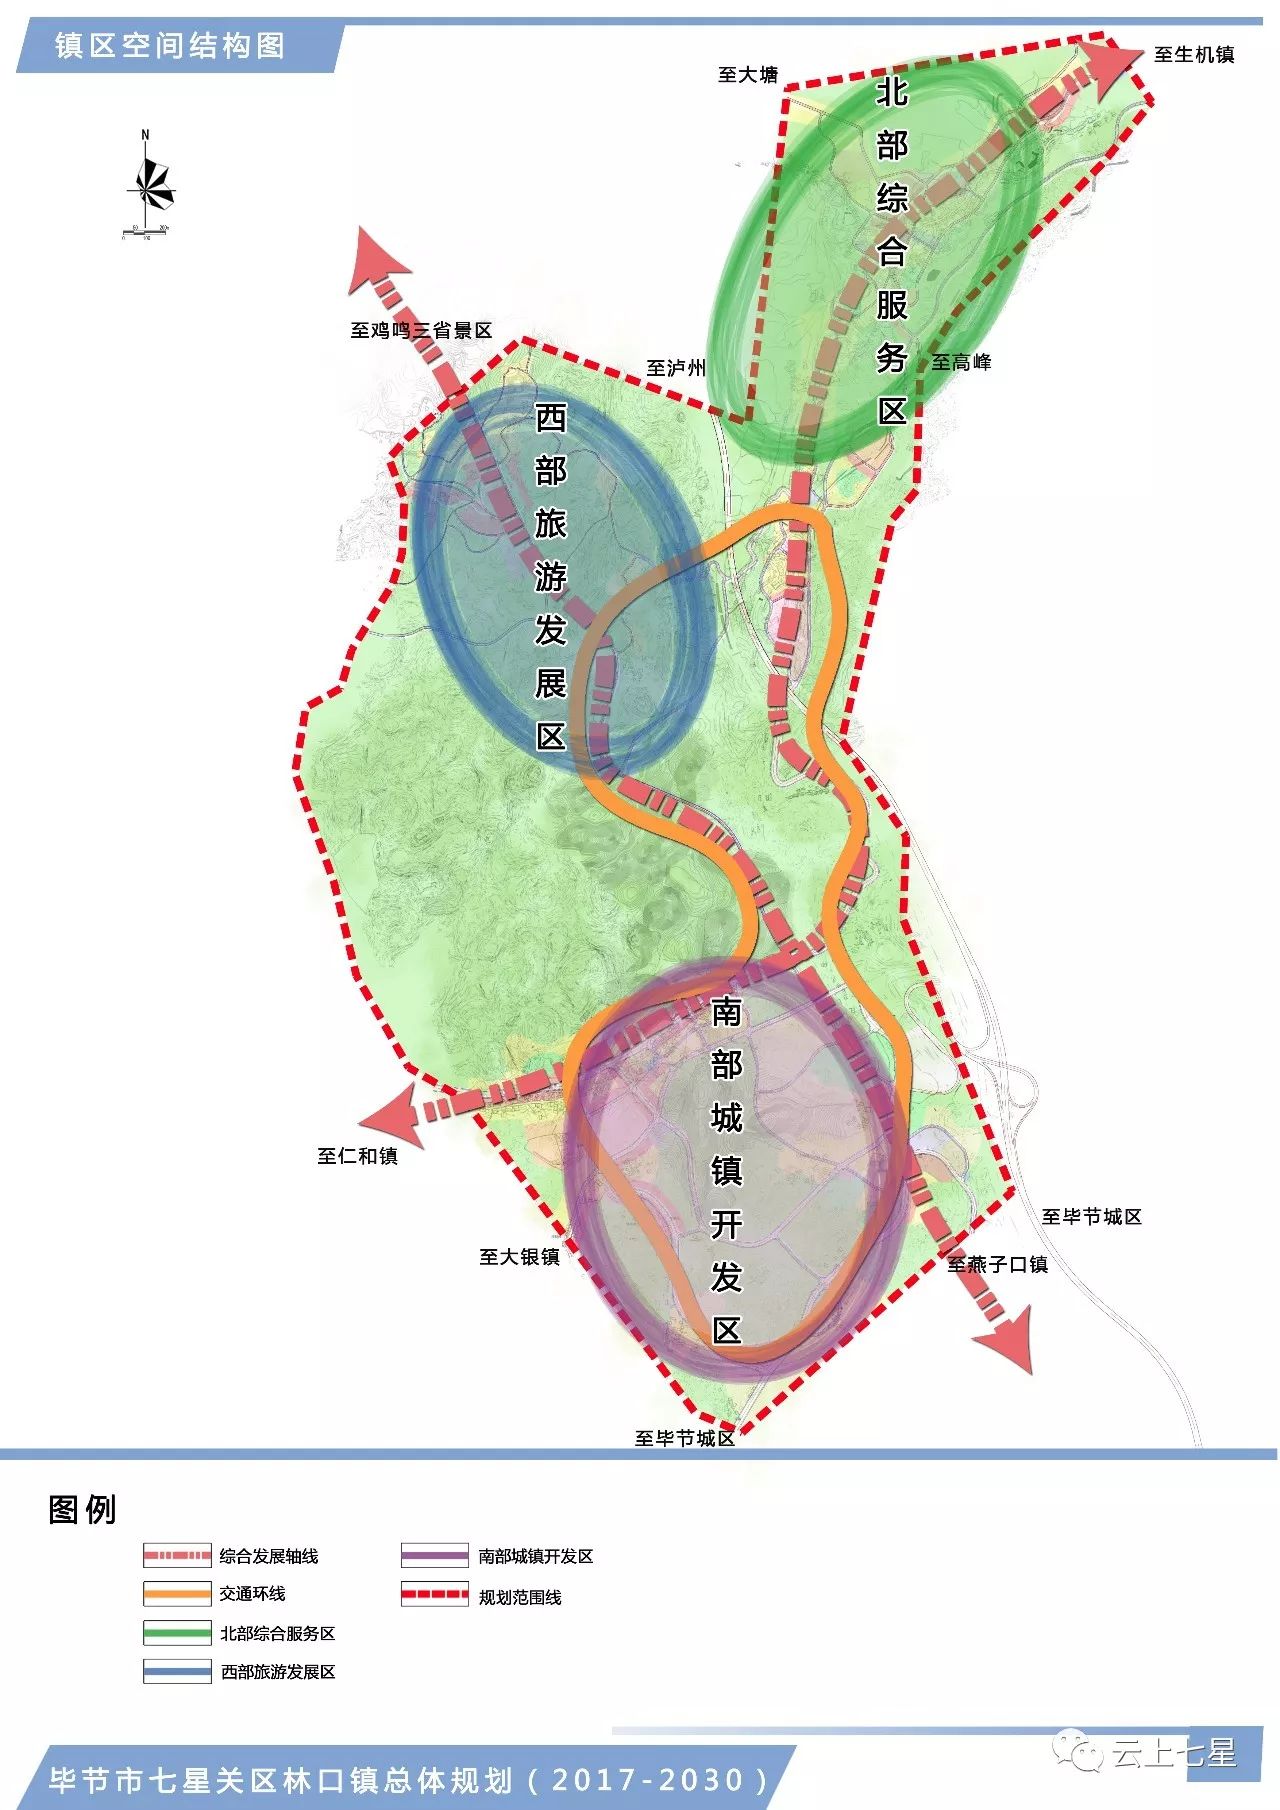 林口镇总体规划修编(2017—2030)镇区空间结构图